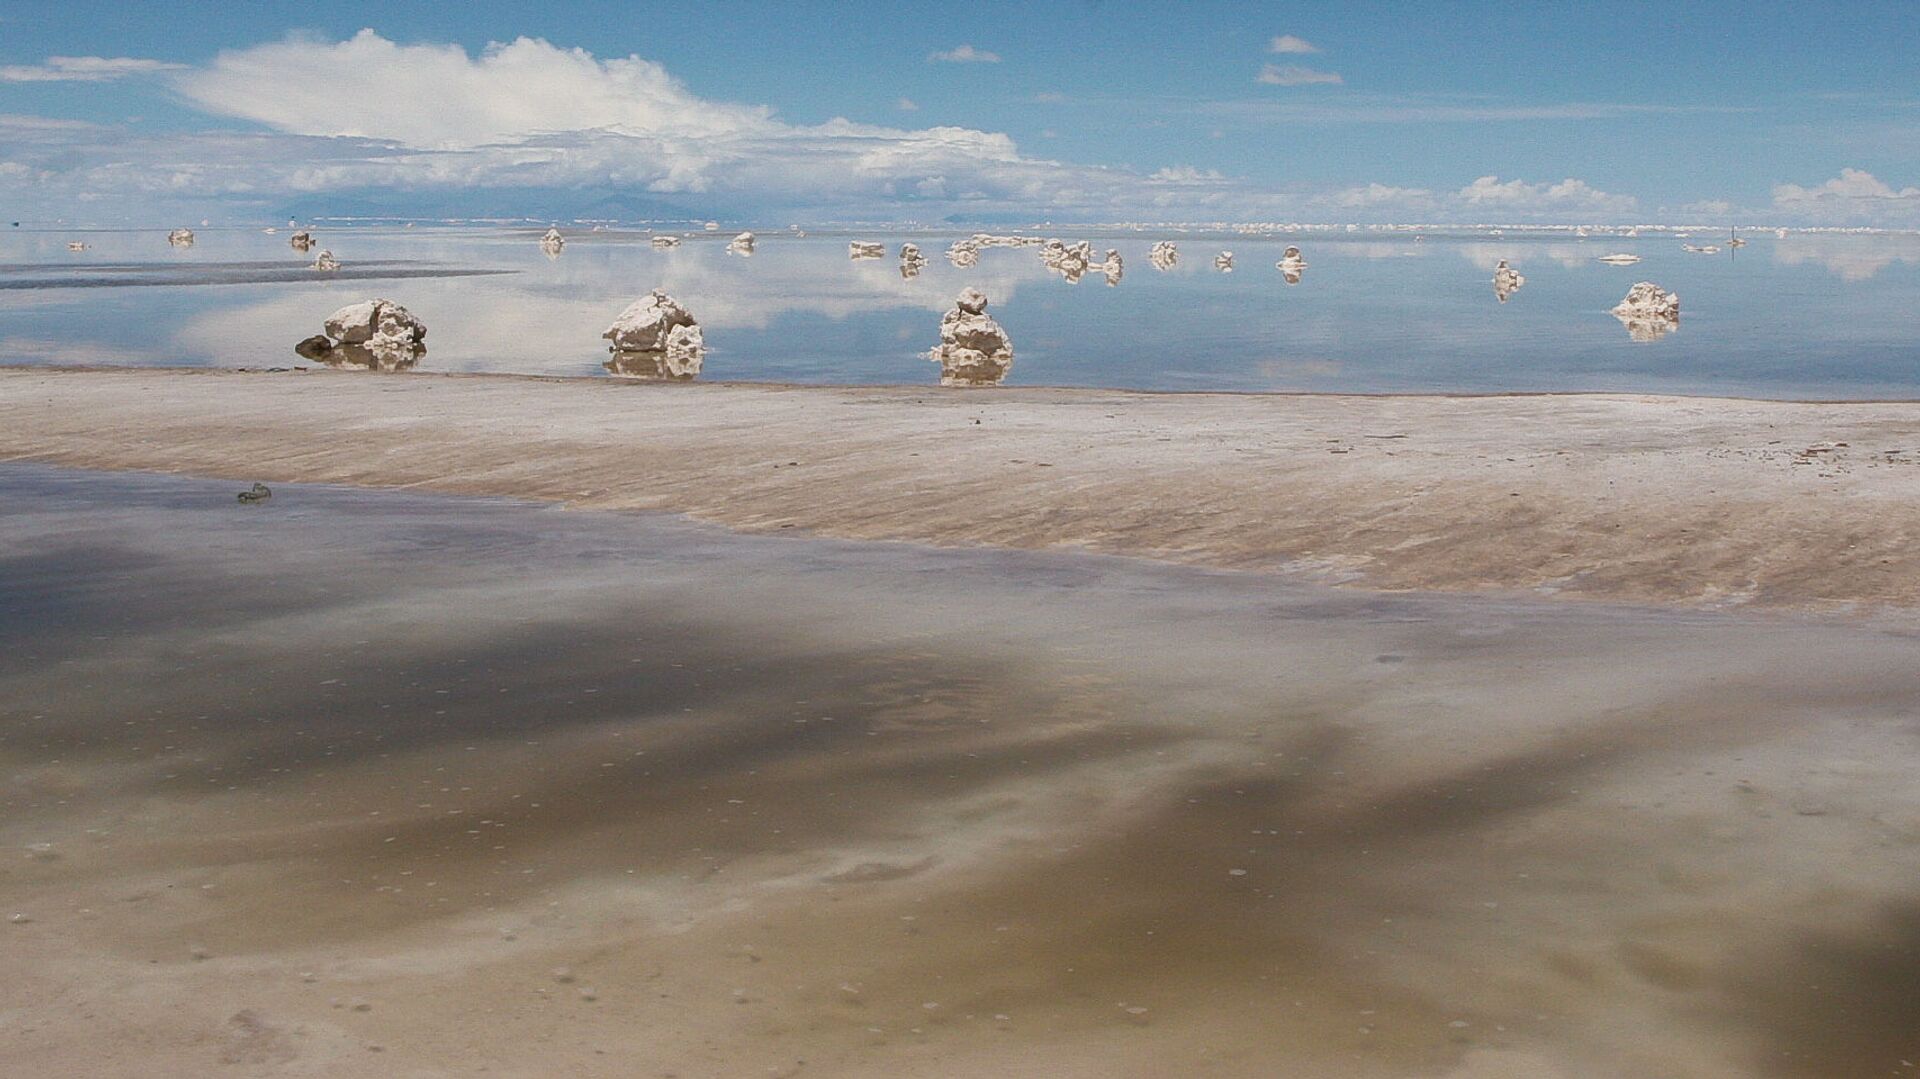 El salar de Uyuni en Bolivia, gran reserva de litio - Sputnik Mundo, 1920, 02.02.2021